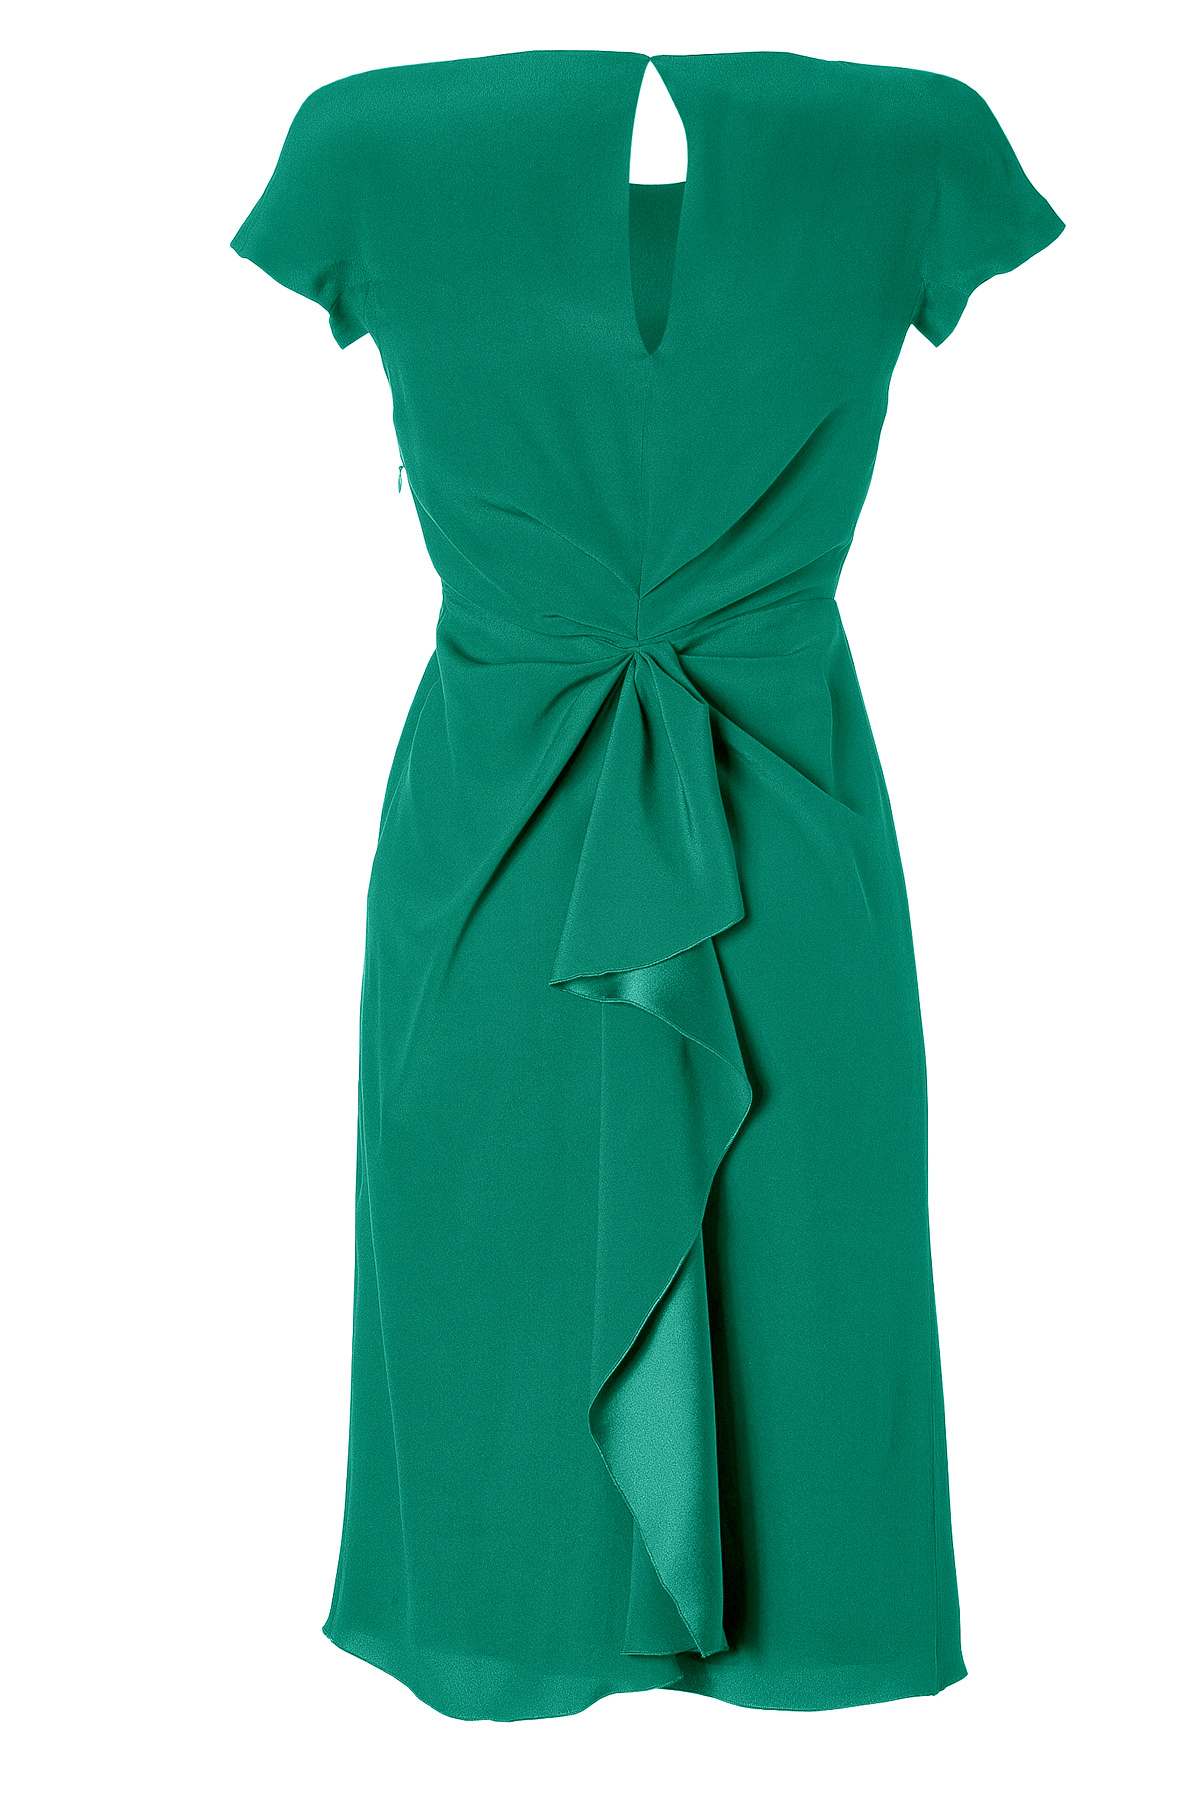 Lyst - Alberta ferretti Emerald Draped Silk Dress in Green